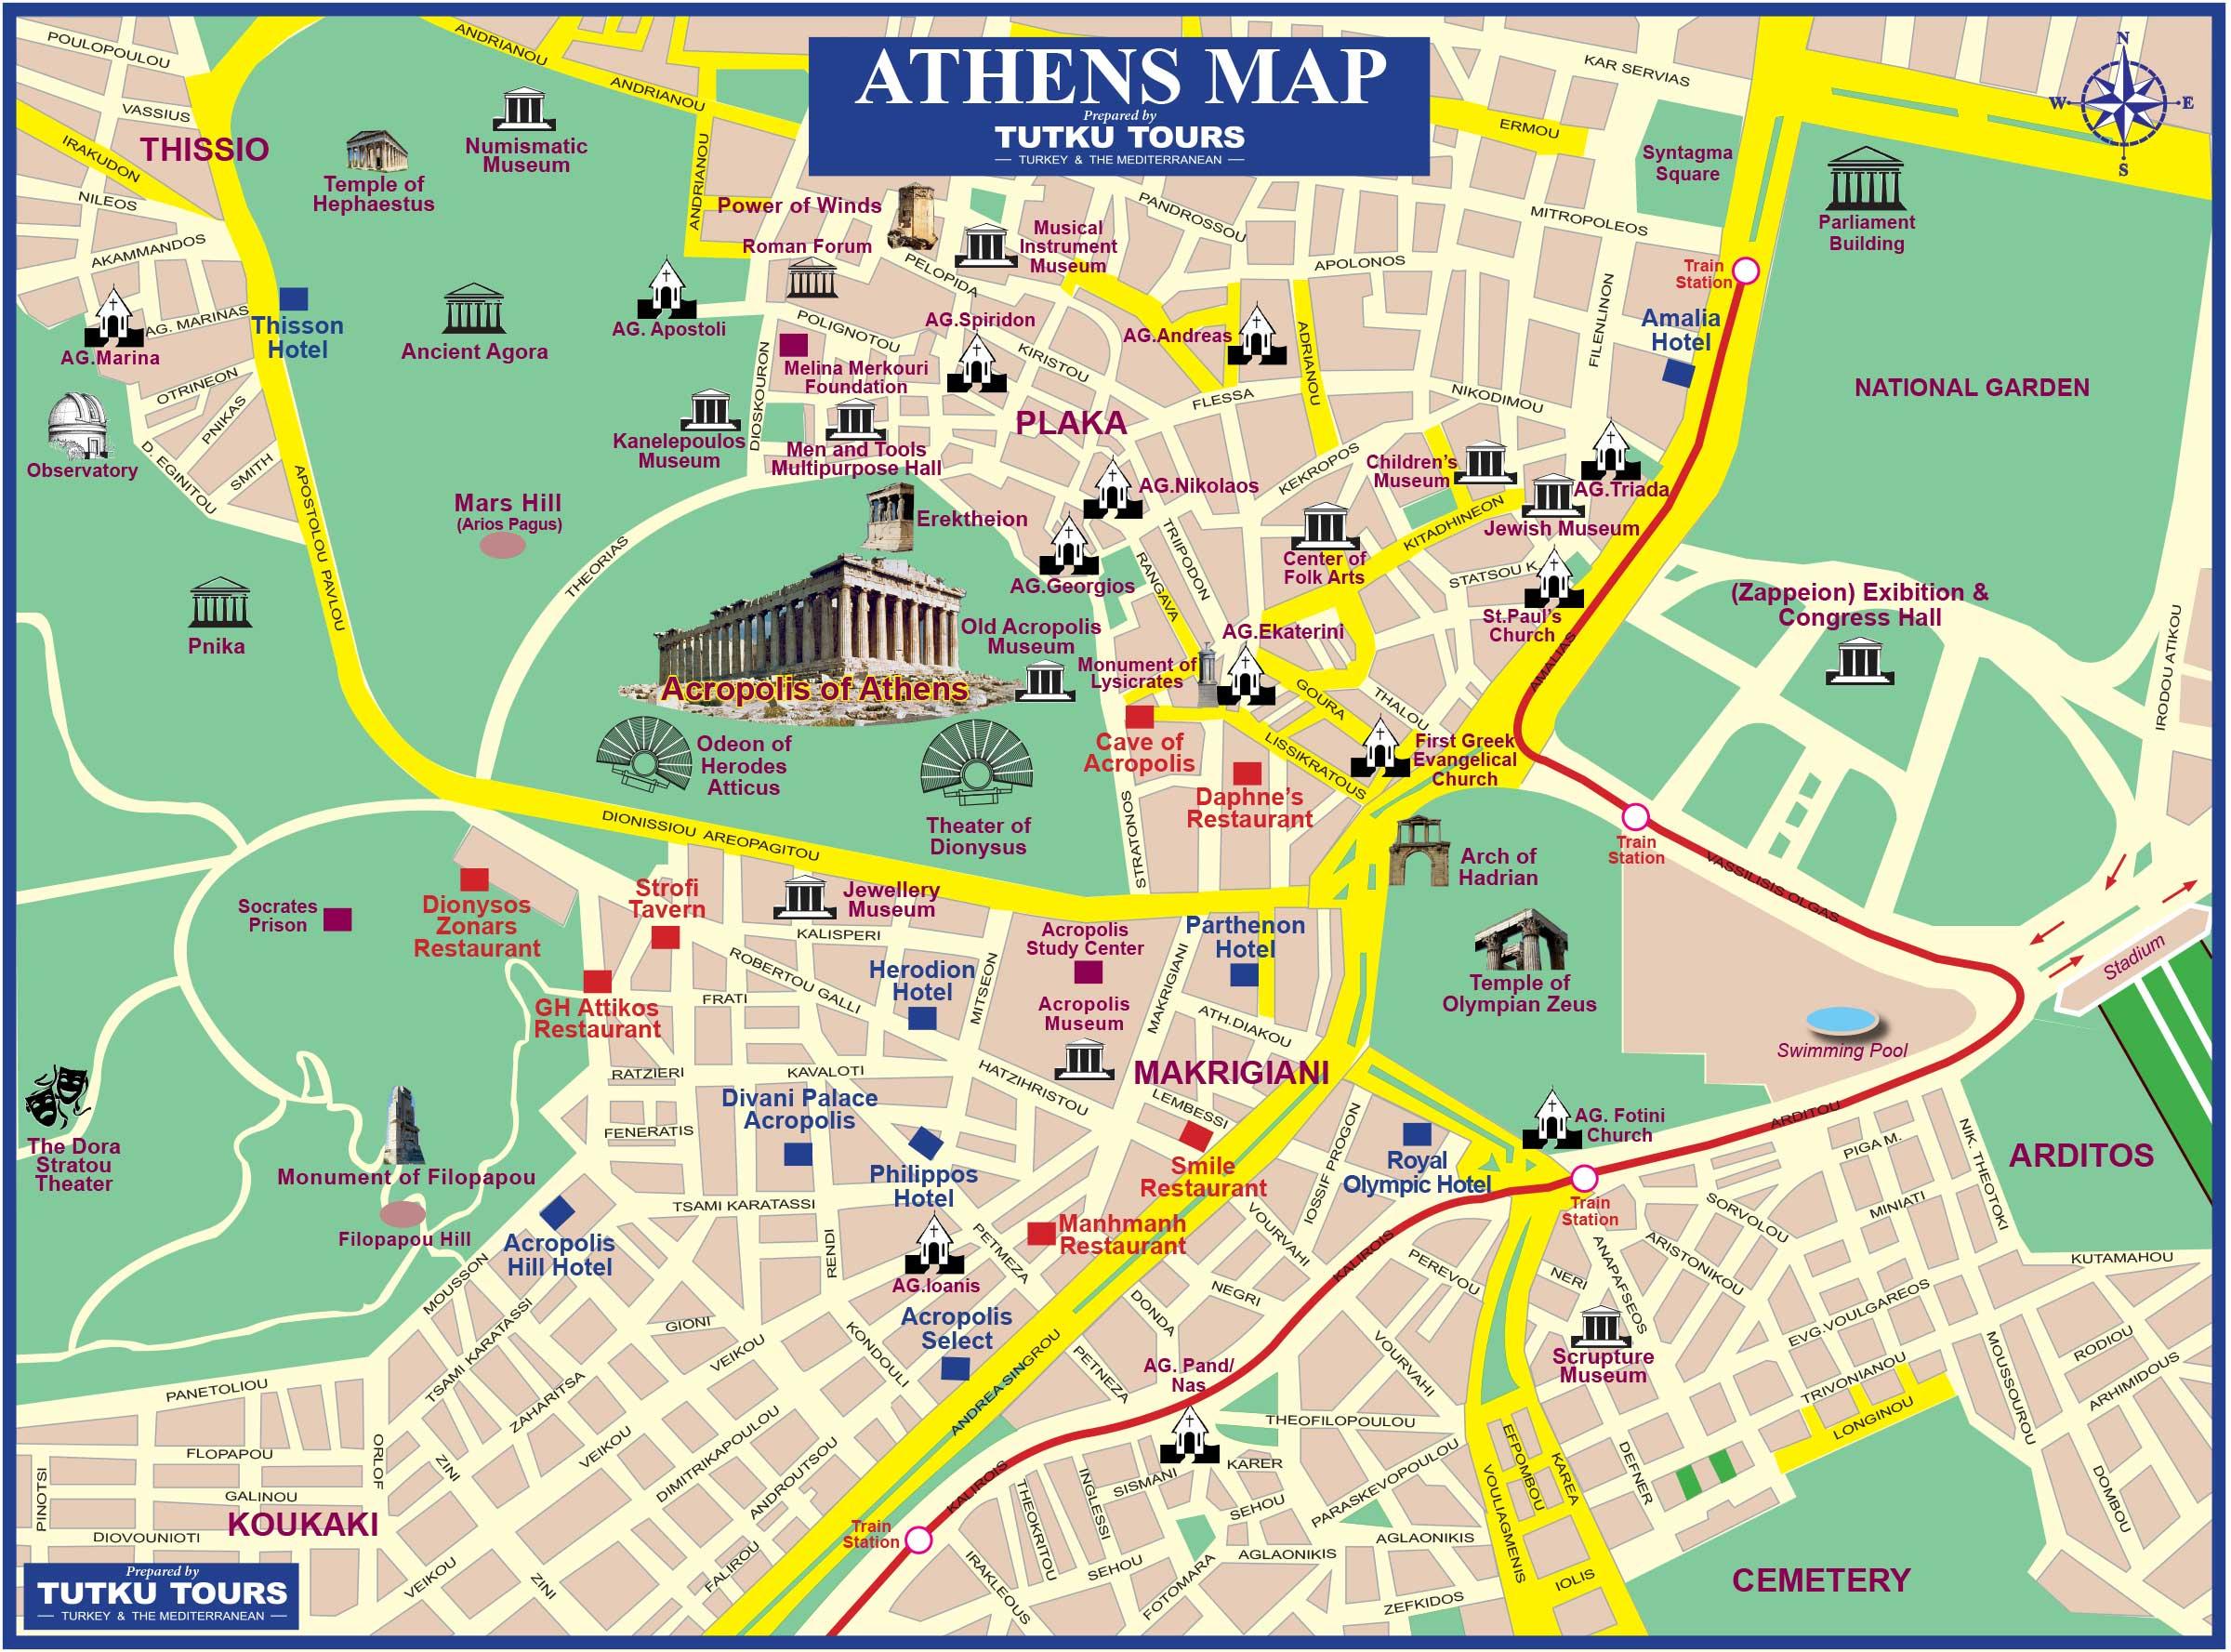 plan a visit to athens